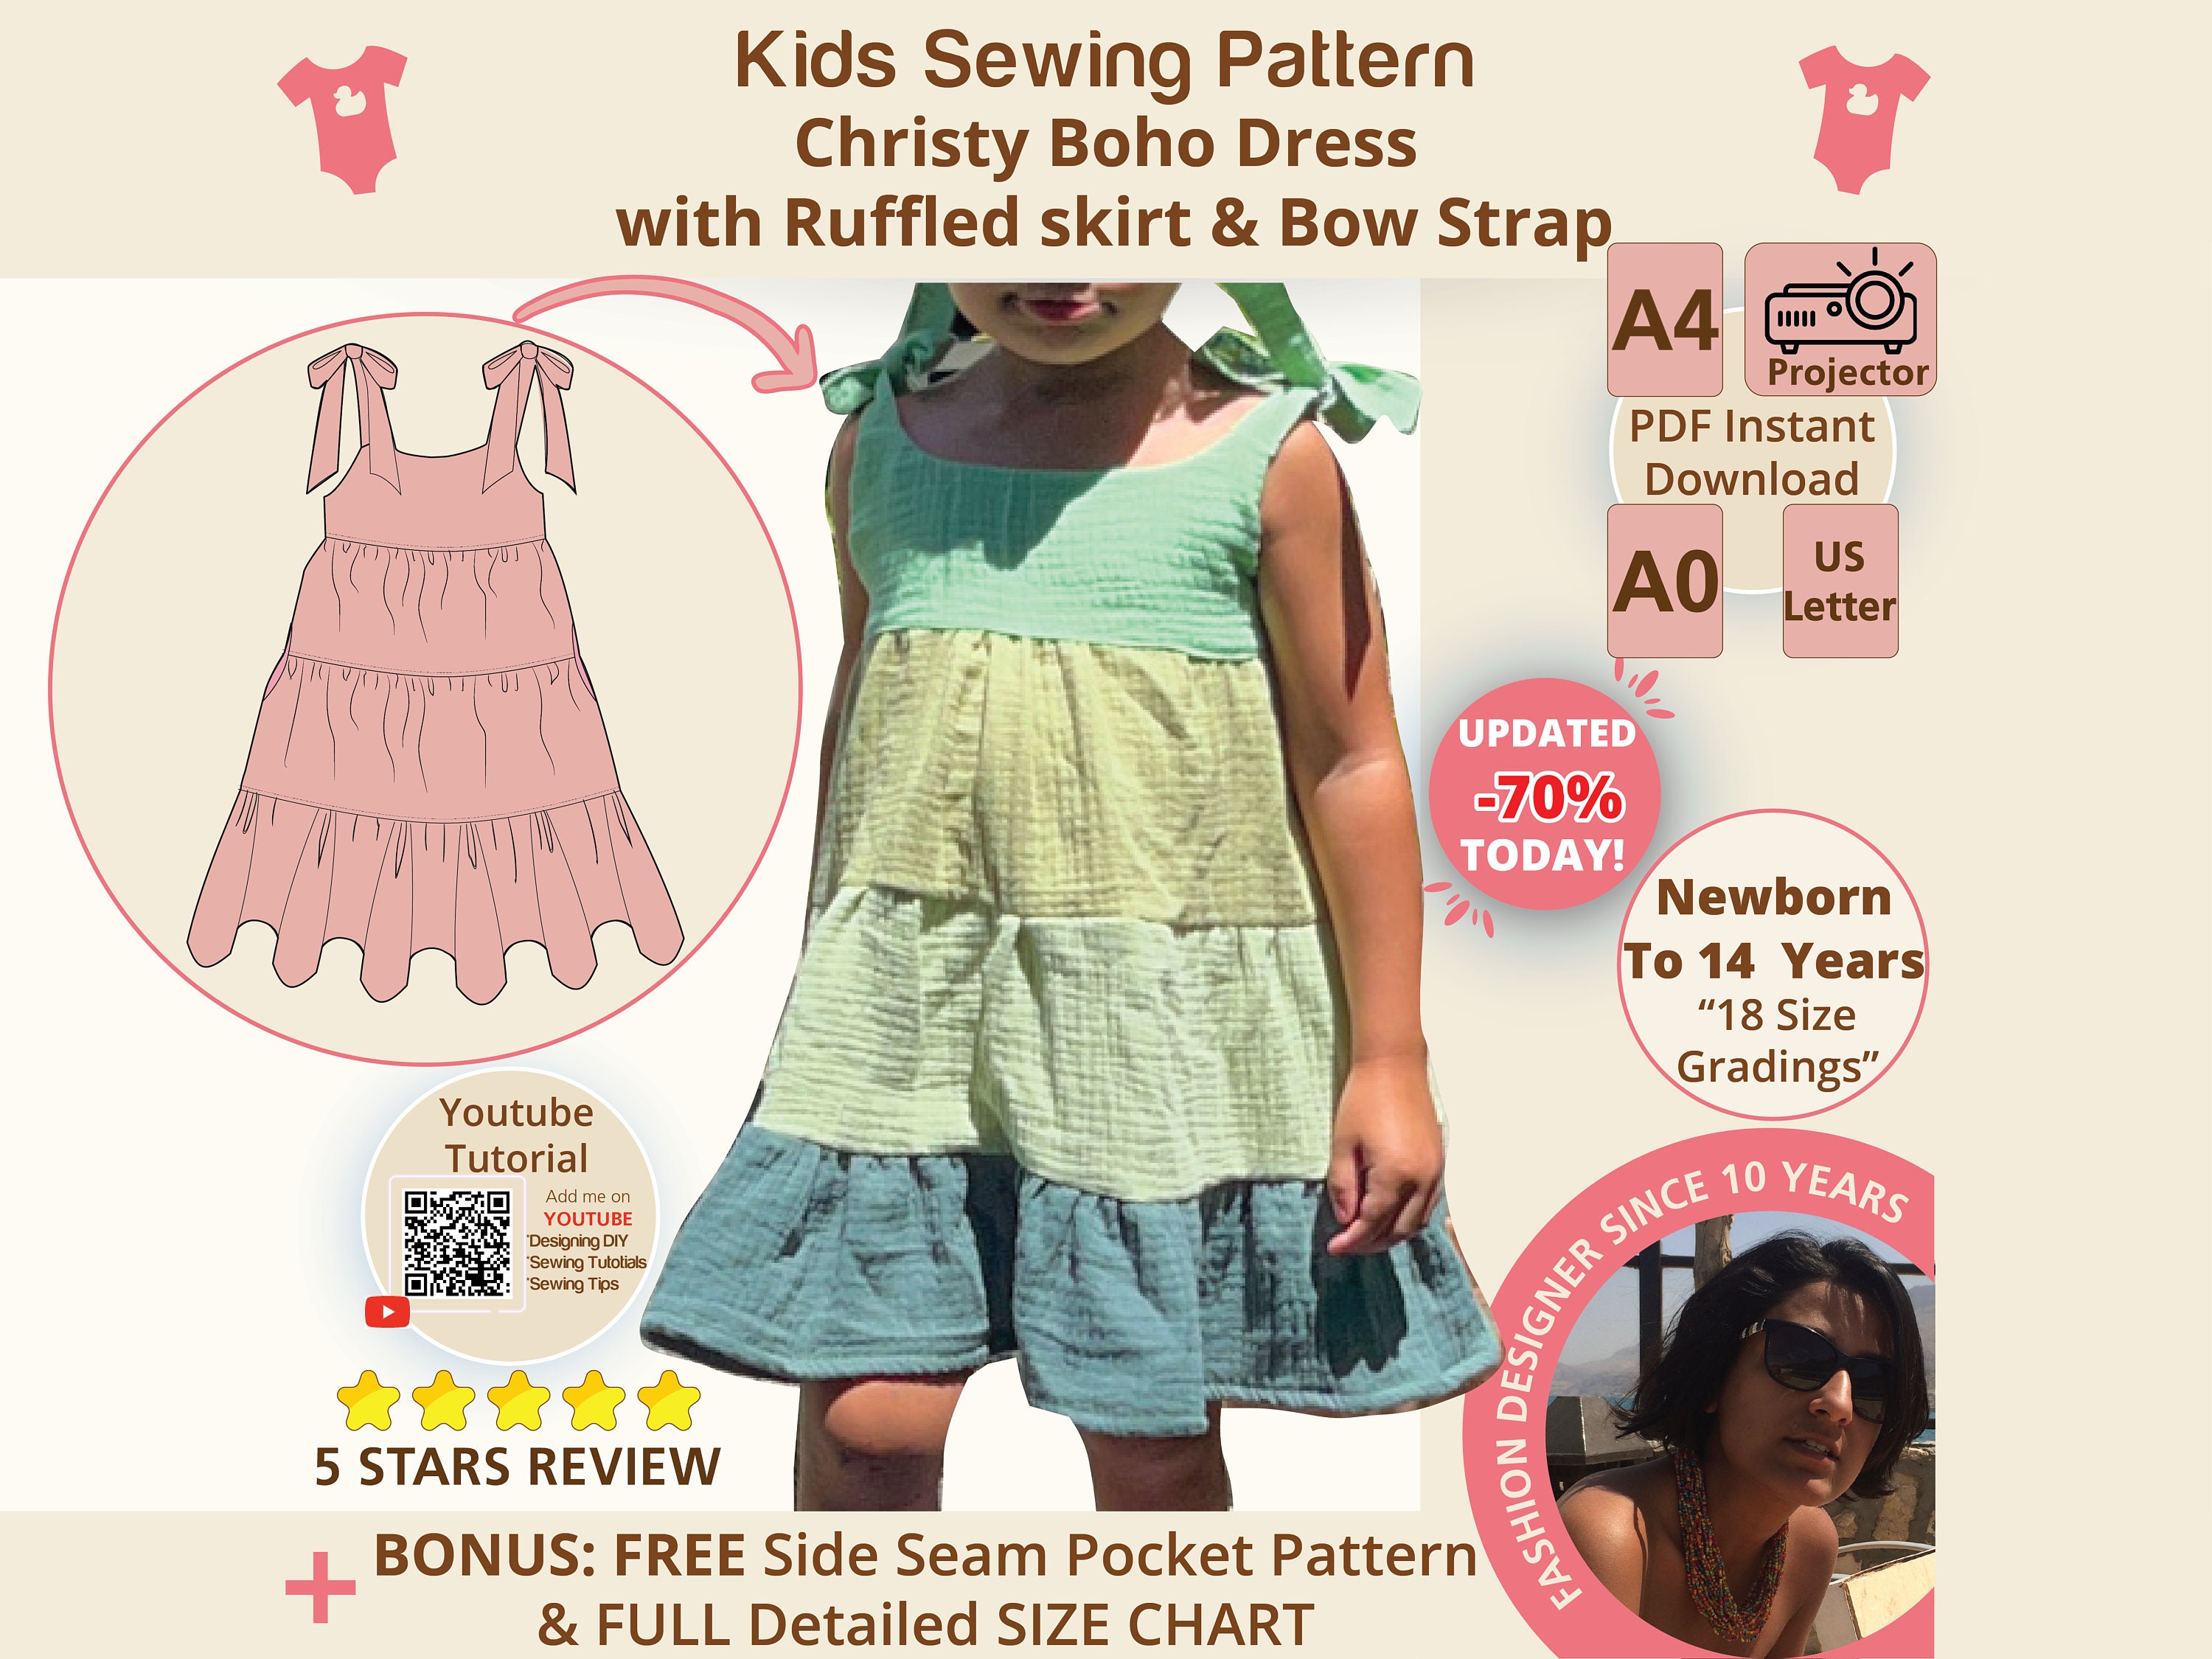 VOLINFO Fashion Design Kit for Girls, Sewing Kit for Kids, DIY Arts & Crafts  Kit for